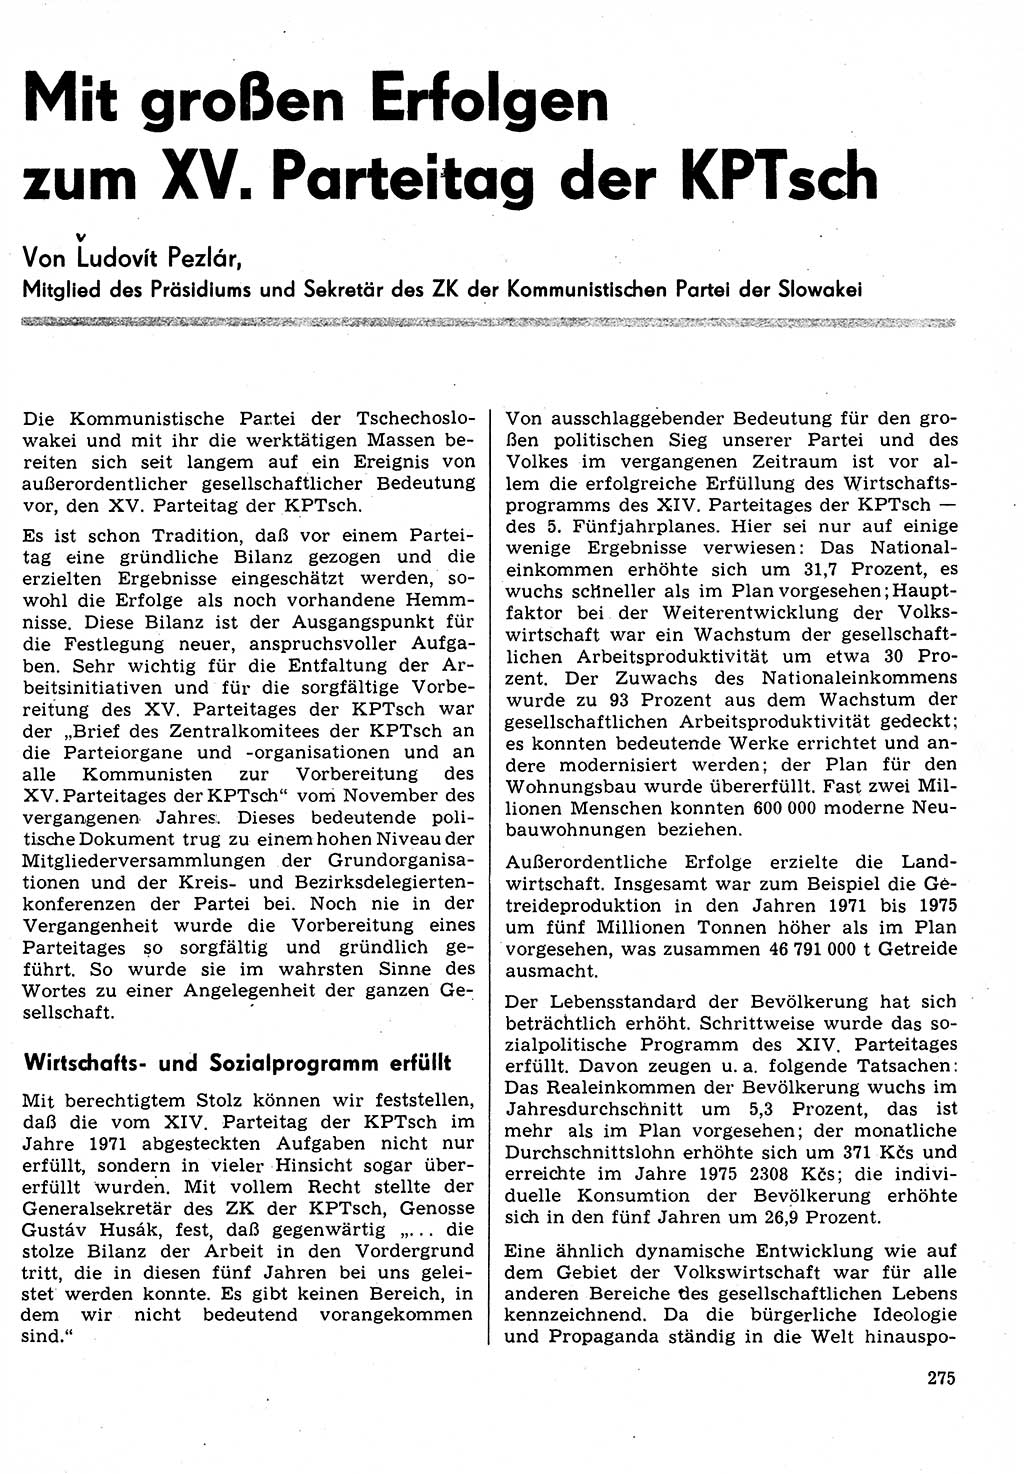 Neuer Weg (NW), Organ des Zentralkomitees (ZK) der SED (Sozialistische Einheitspartei Deutschlands) für Fragen des Parteilebens, 31. Jahrgang [Deutsche Demokratische Republik (DDR)] 1976, Seite 275 (NW ZK SED DDR 1976, S. 275)